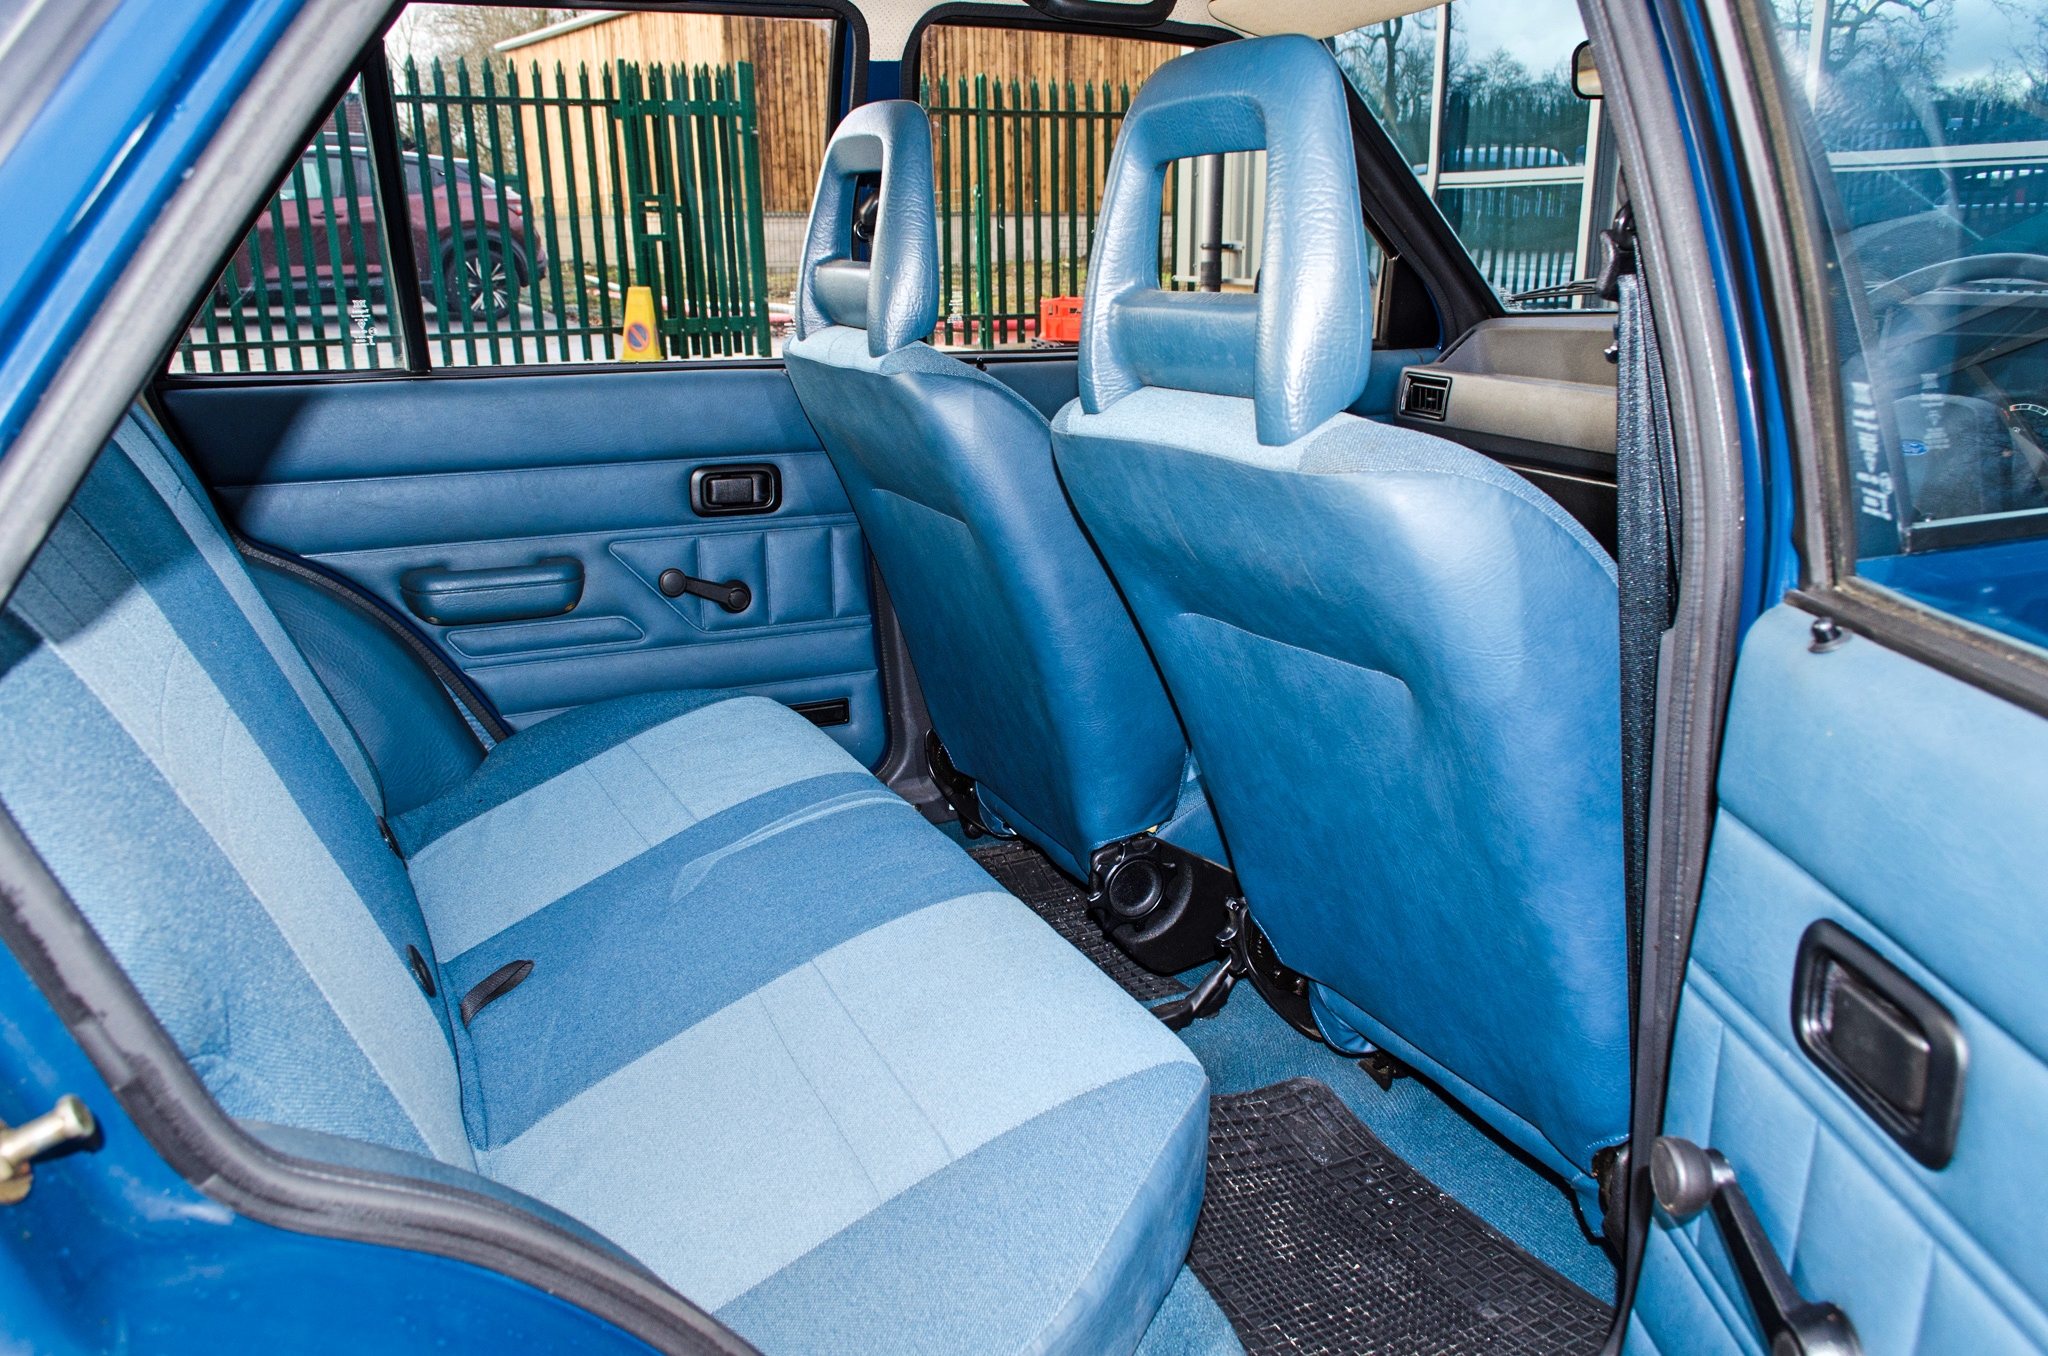 1982 Ford Escort 1.1 L 1100 cc 5 door hatchback 0nly 2017 miles - Image 34 of 50